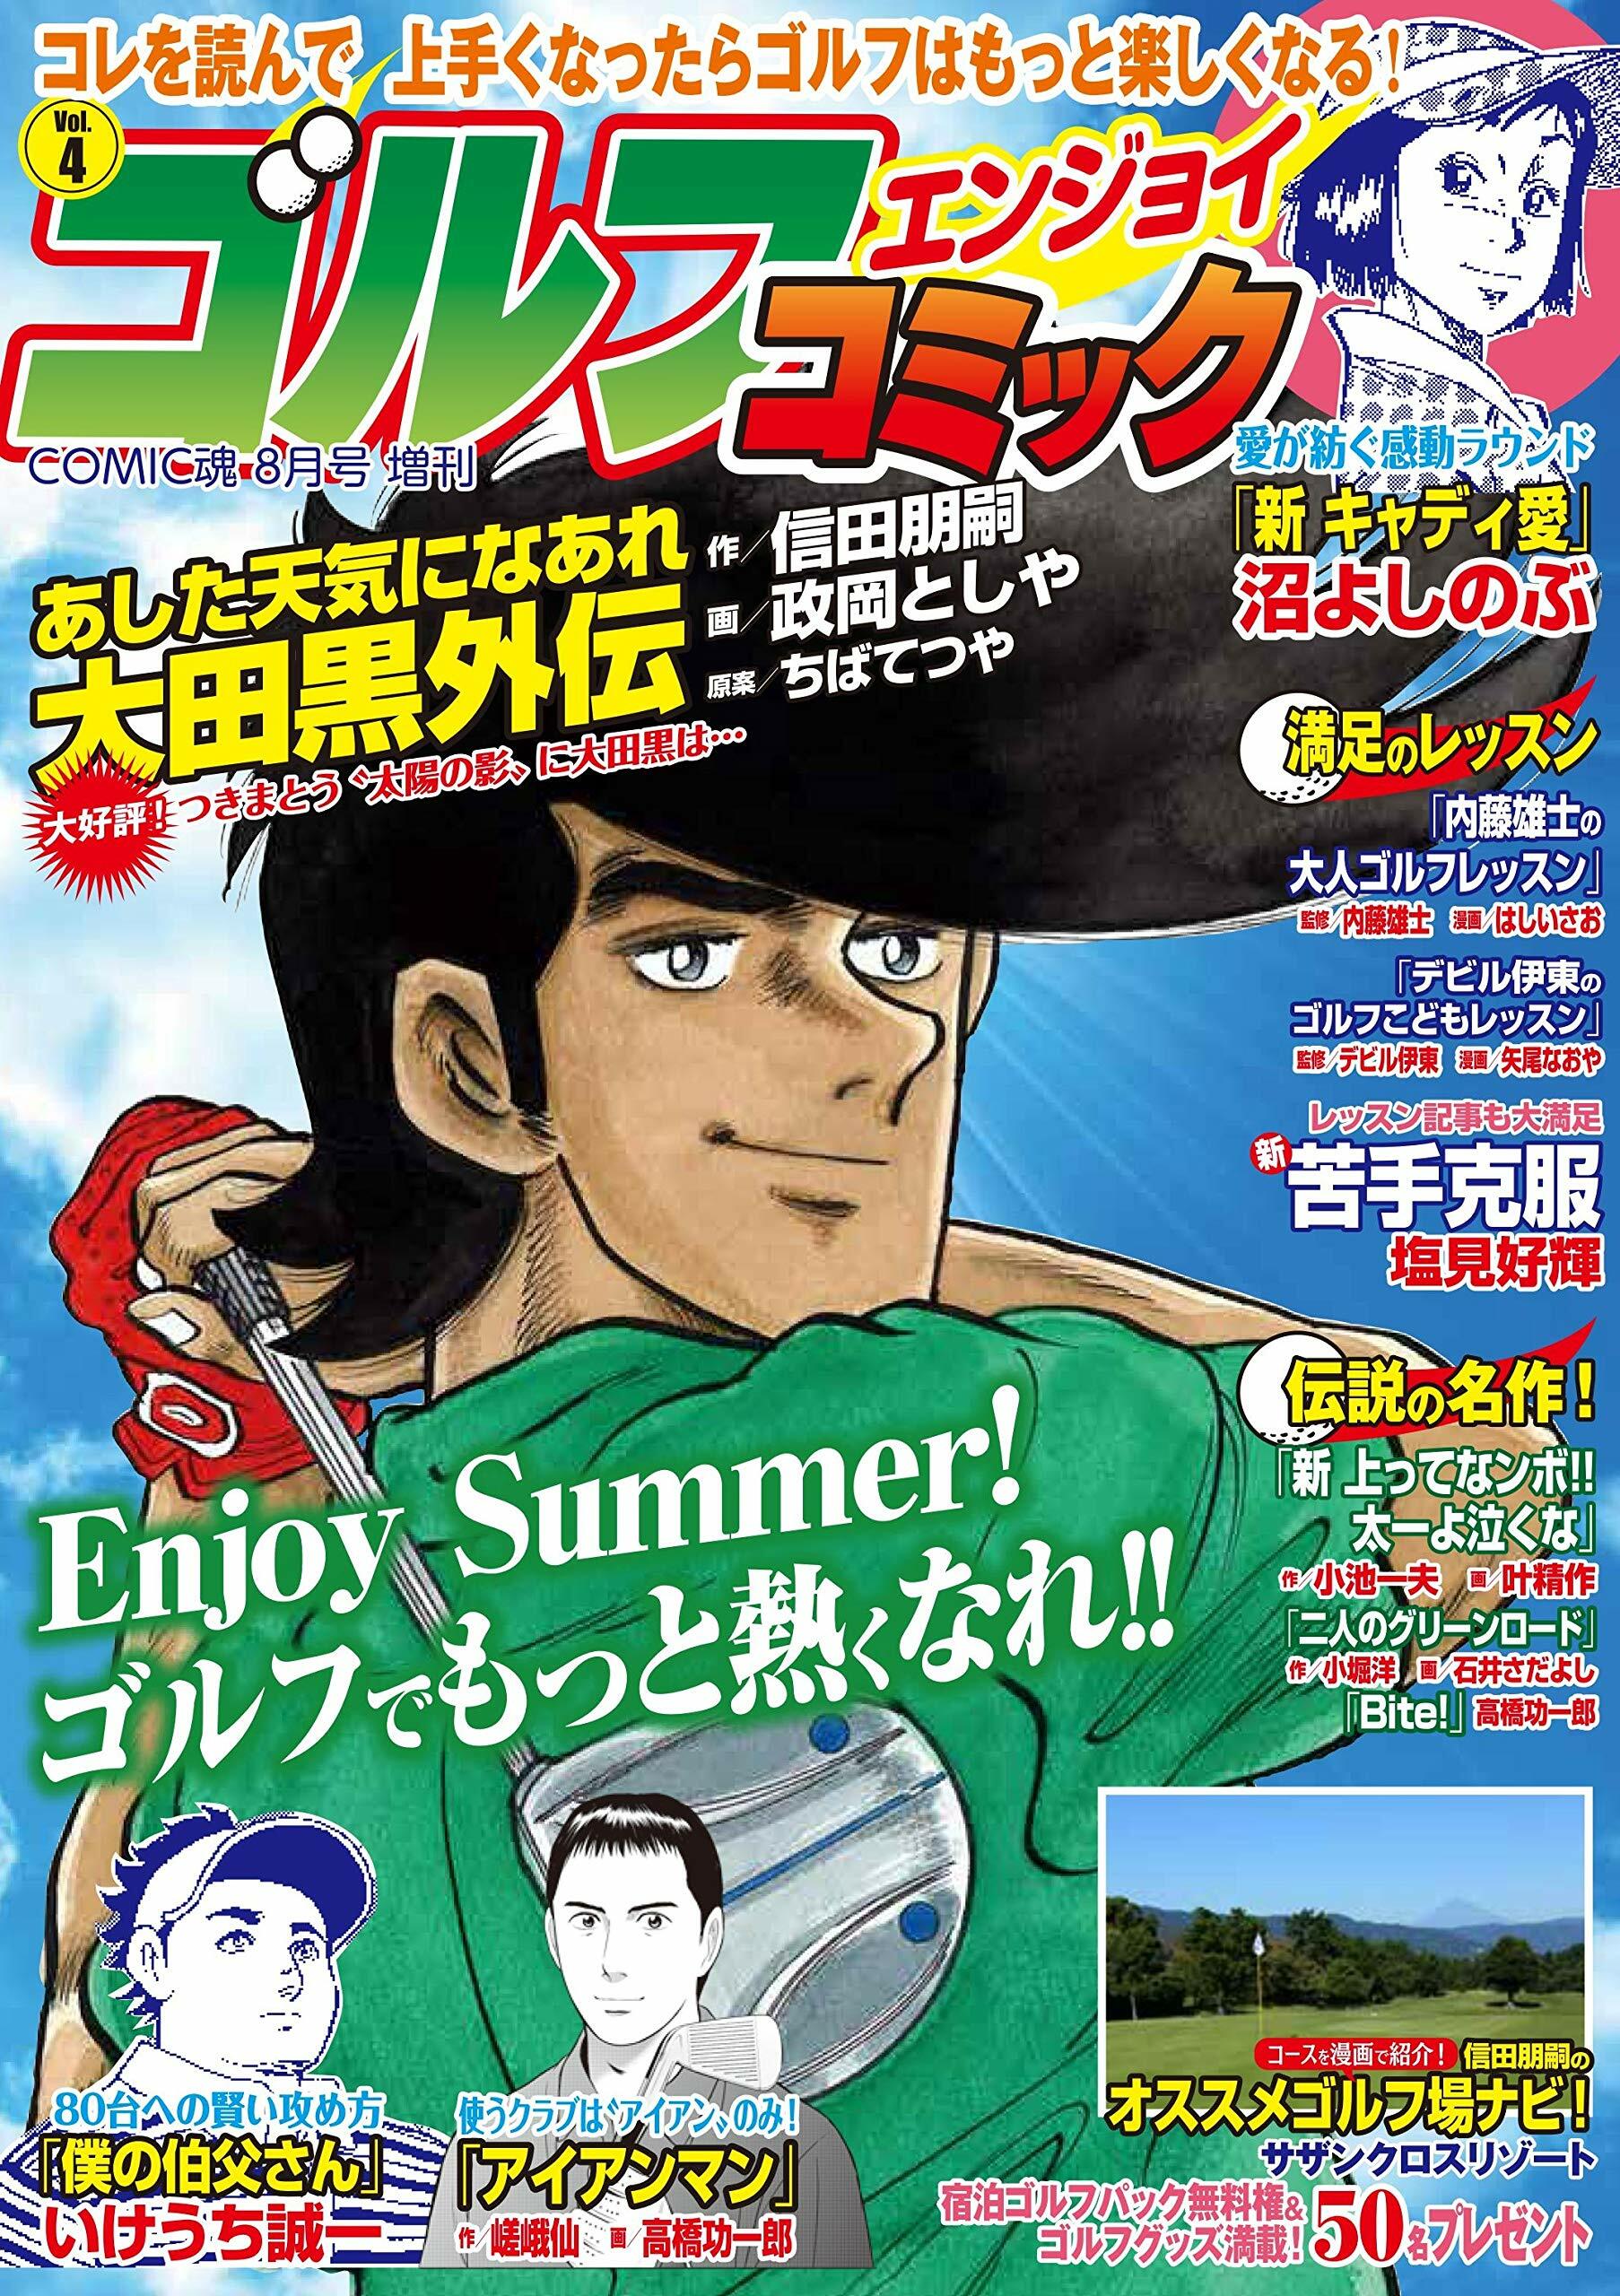 ゴルフエンジョイコミック Vol.4 COMIC魂 2019年08月號增刊